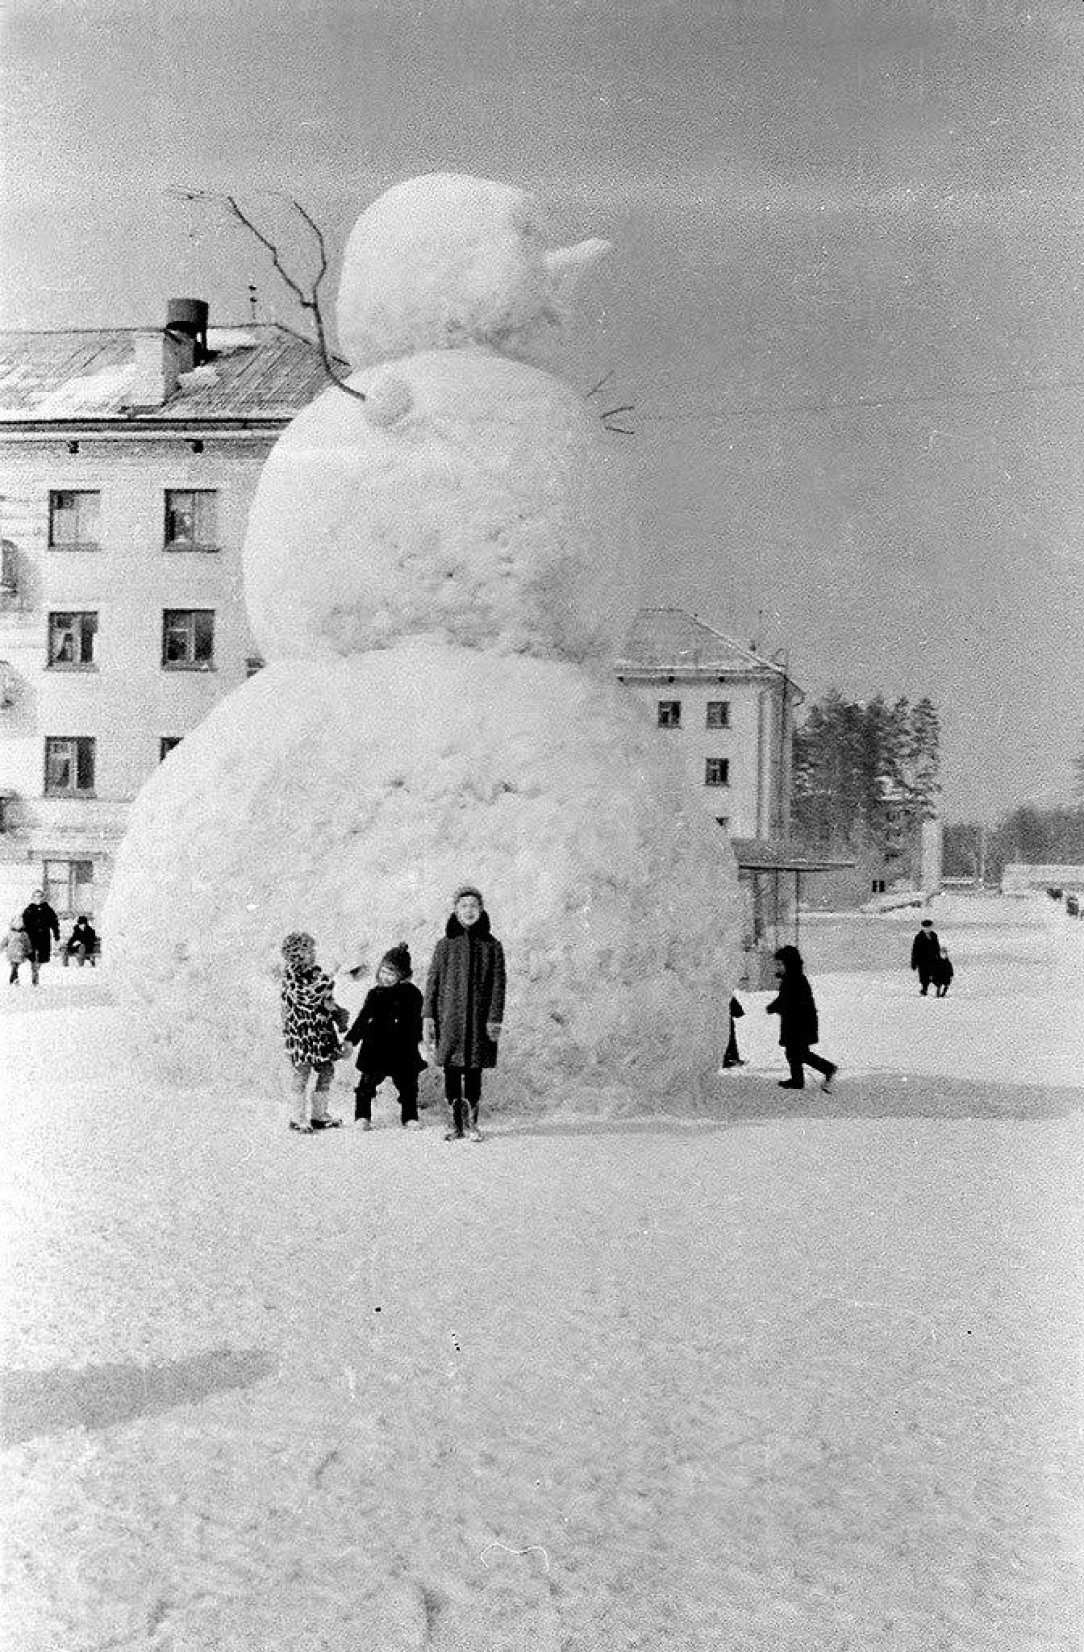 Snowman on a Soviet scale. Zarechny, USSR. Late 1960s